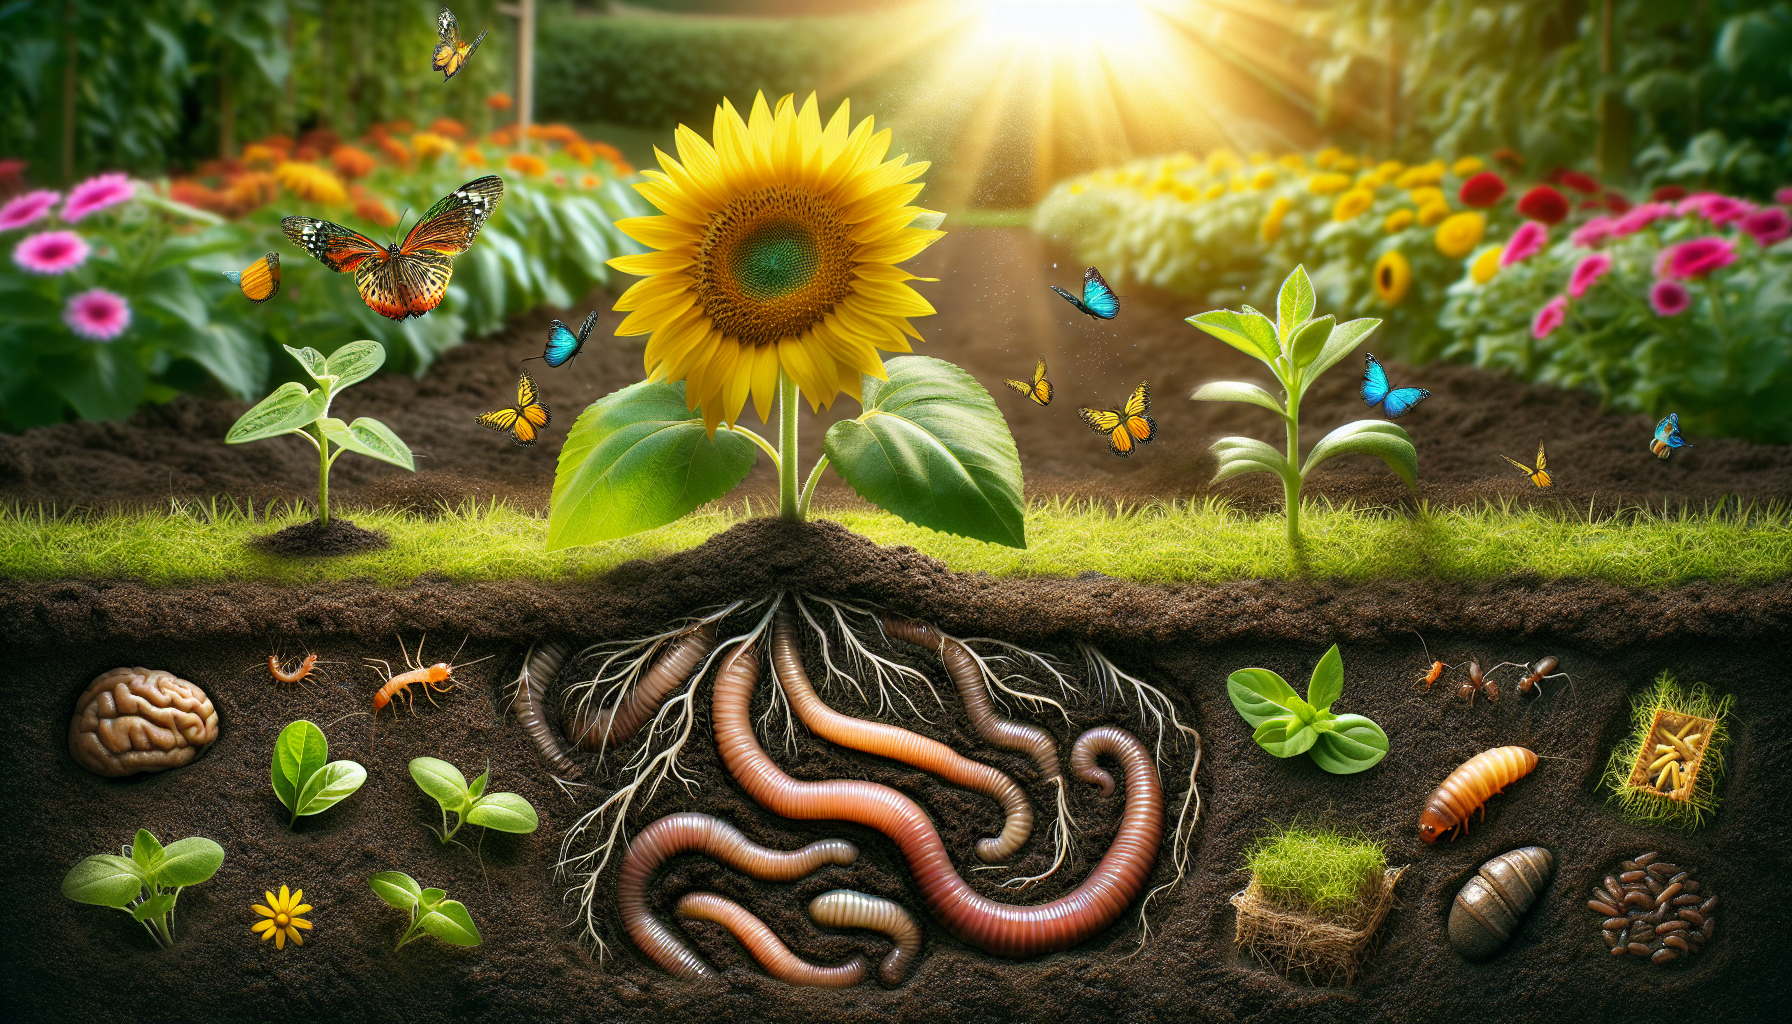 découvrez les incroyables avantages du jardinage sur sol vivant et laissez-vous surprendre ! profitez des bienfaits dès maintenant.